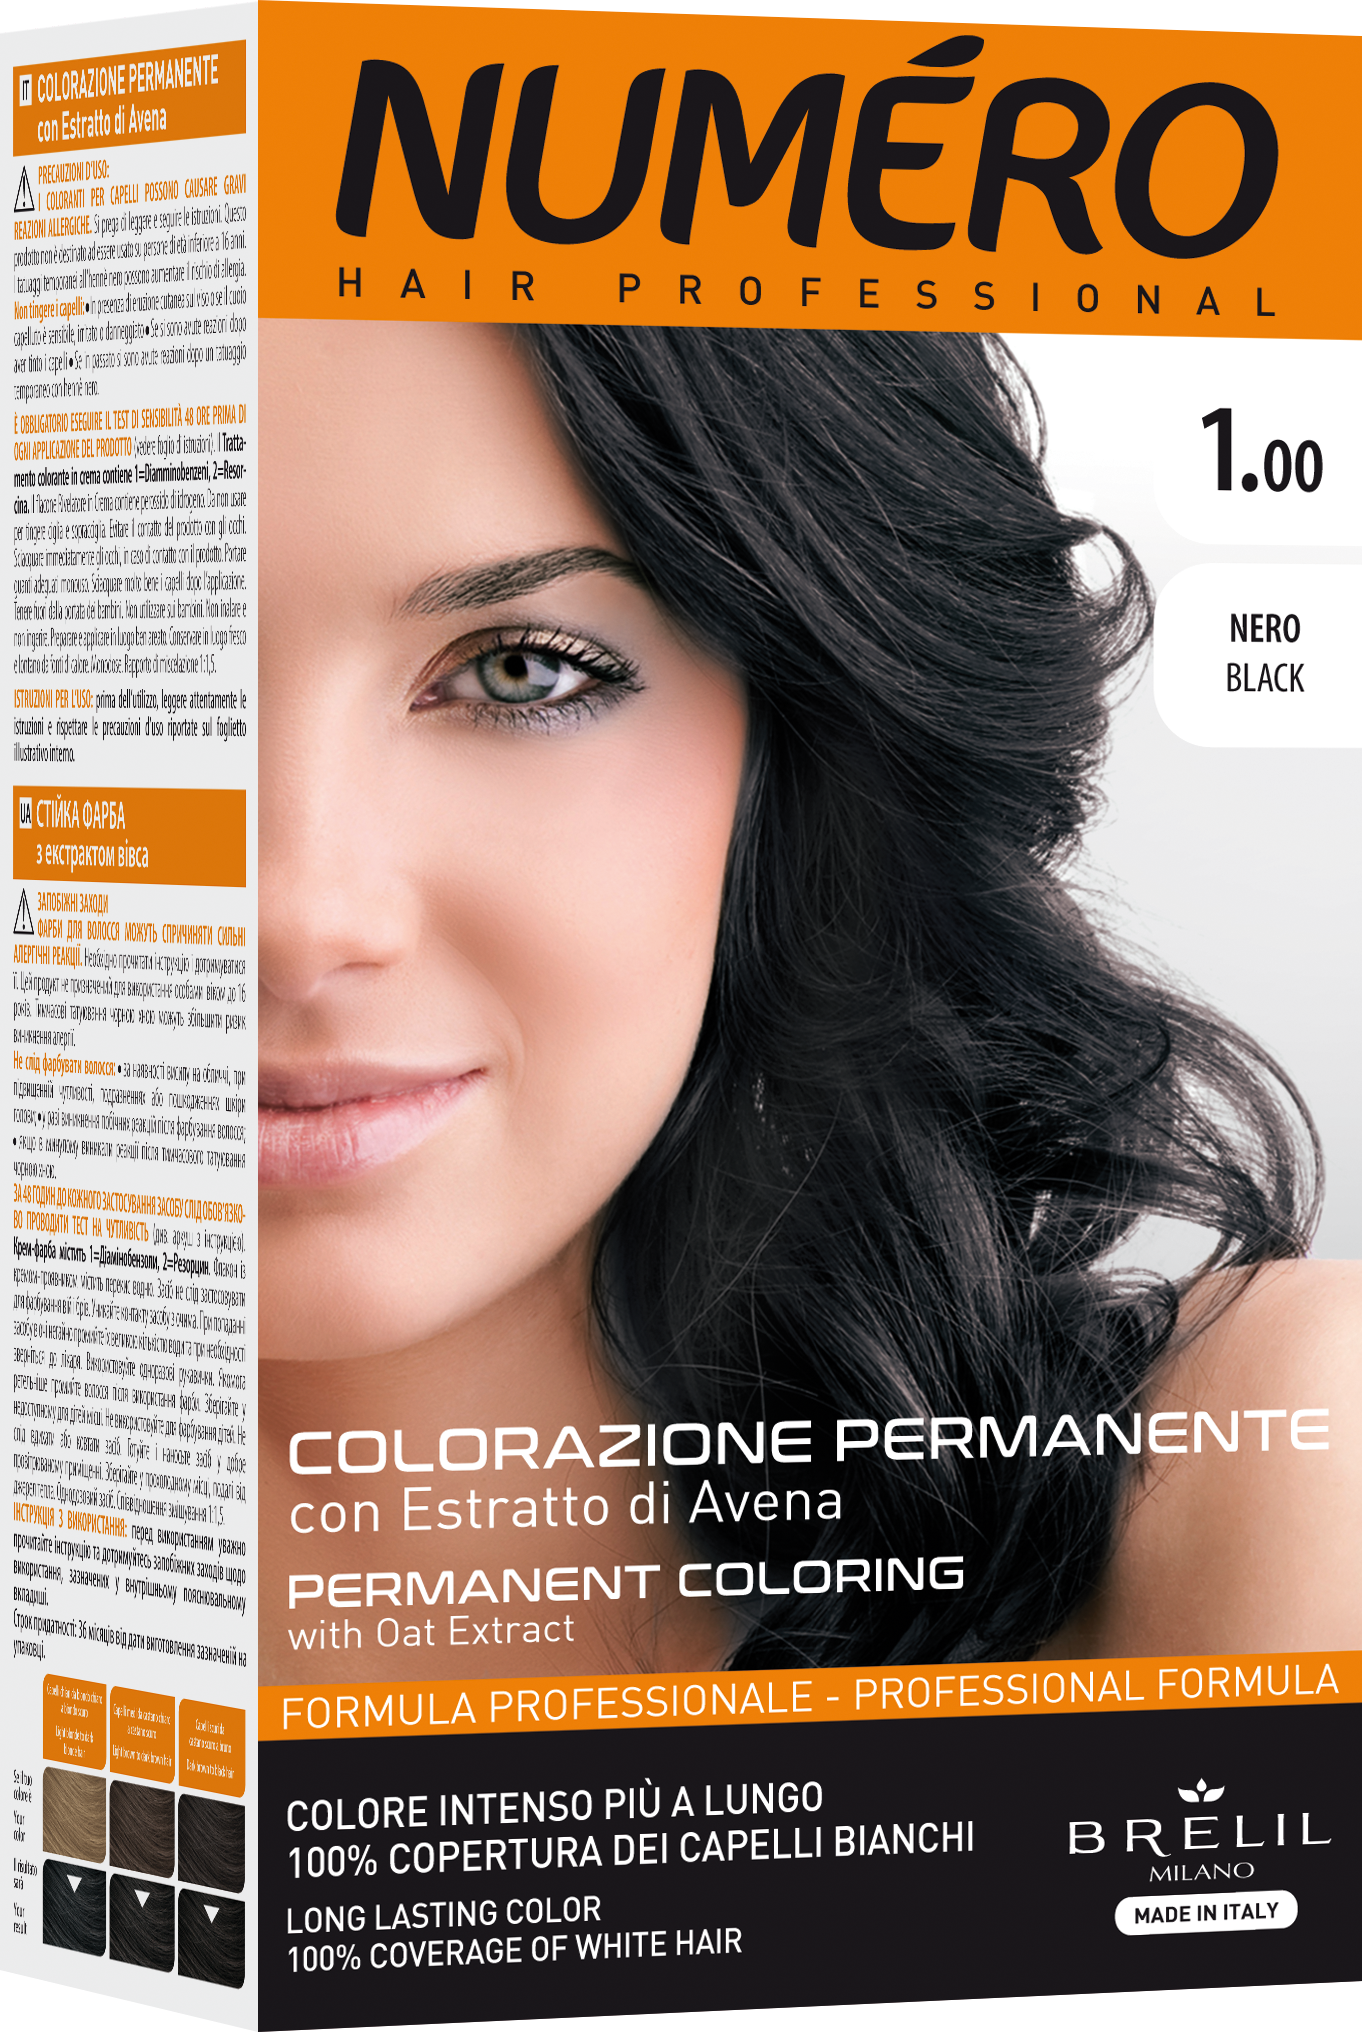 Фарба для волосся Numero Hair Professional Black, відтінок 1.00 (Чорний), 140 мл - фото 1